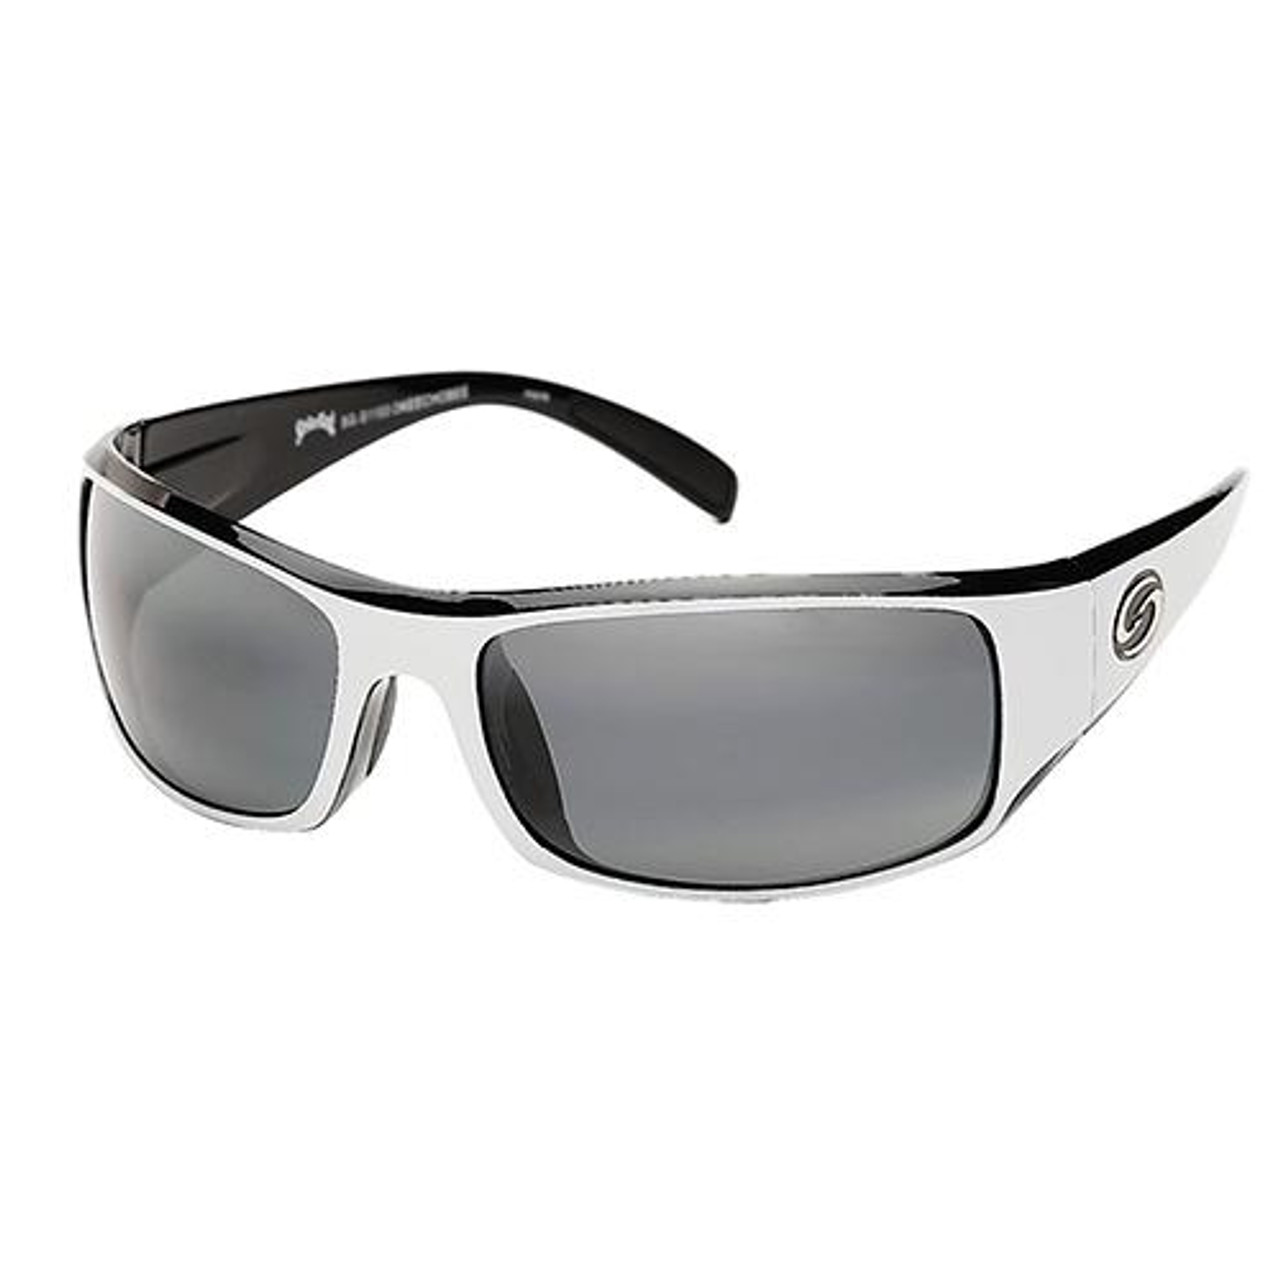 Strike King Lures S11 Optics Sunglasses Okeechobee Style, Rubberized Matte  Gray Frame, Gray Lens, SG-S1170